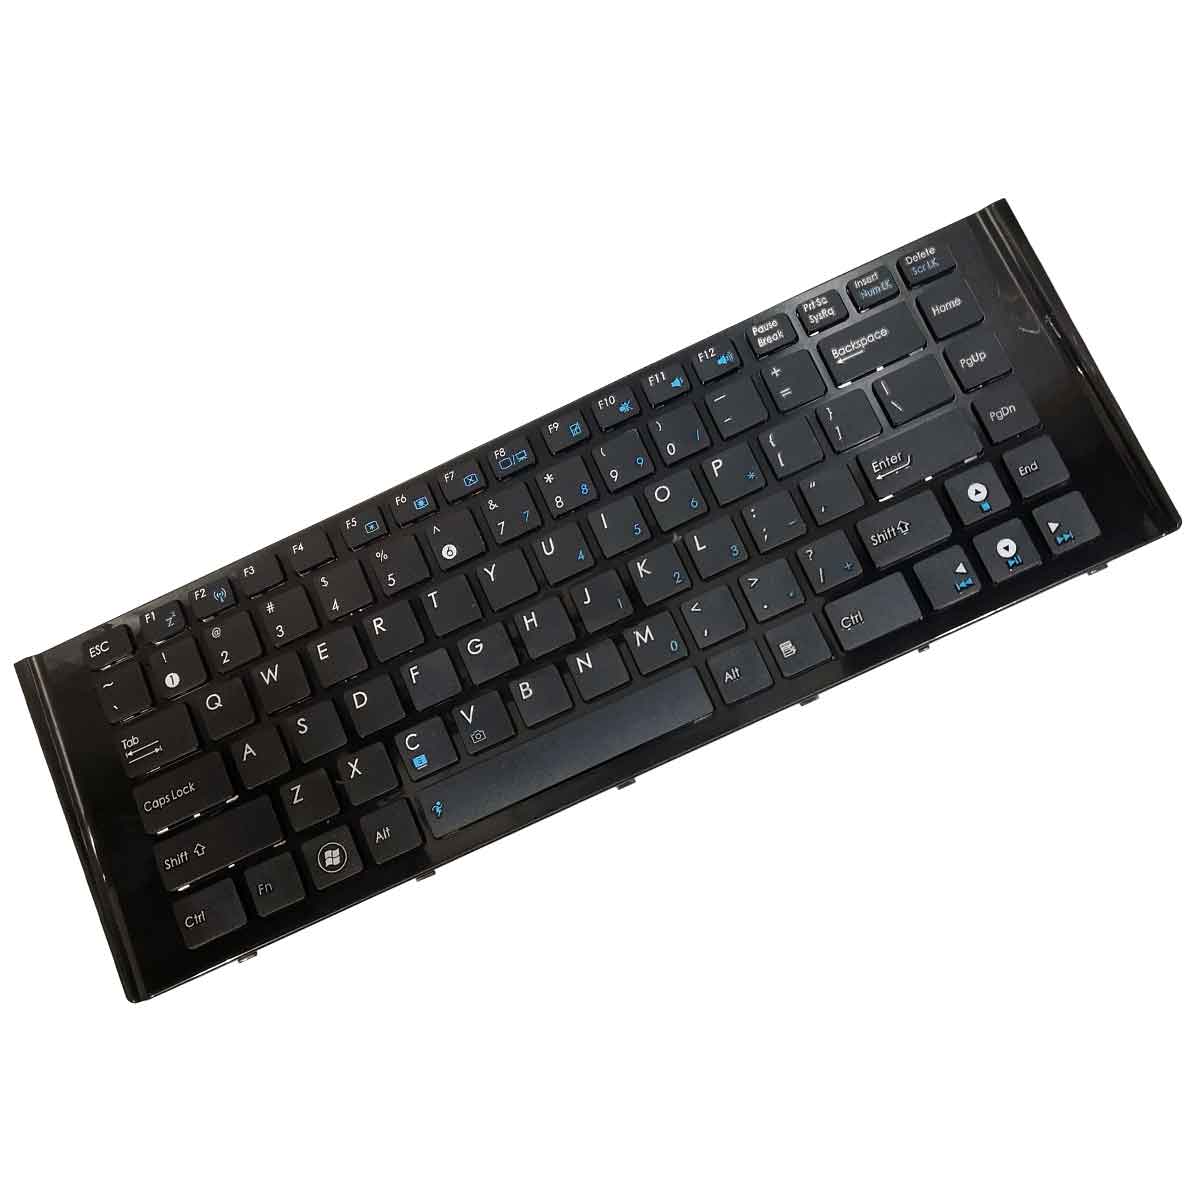 کیبورد لپ تاپ ایسوس Keyboard Laptop ASUS A40 A42 K42 A40 K43 UL30 UL80 U80 N82 N43 V31J